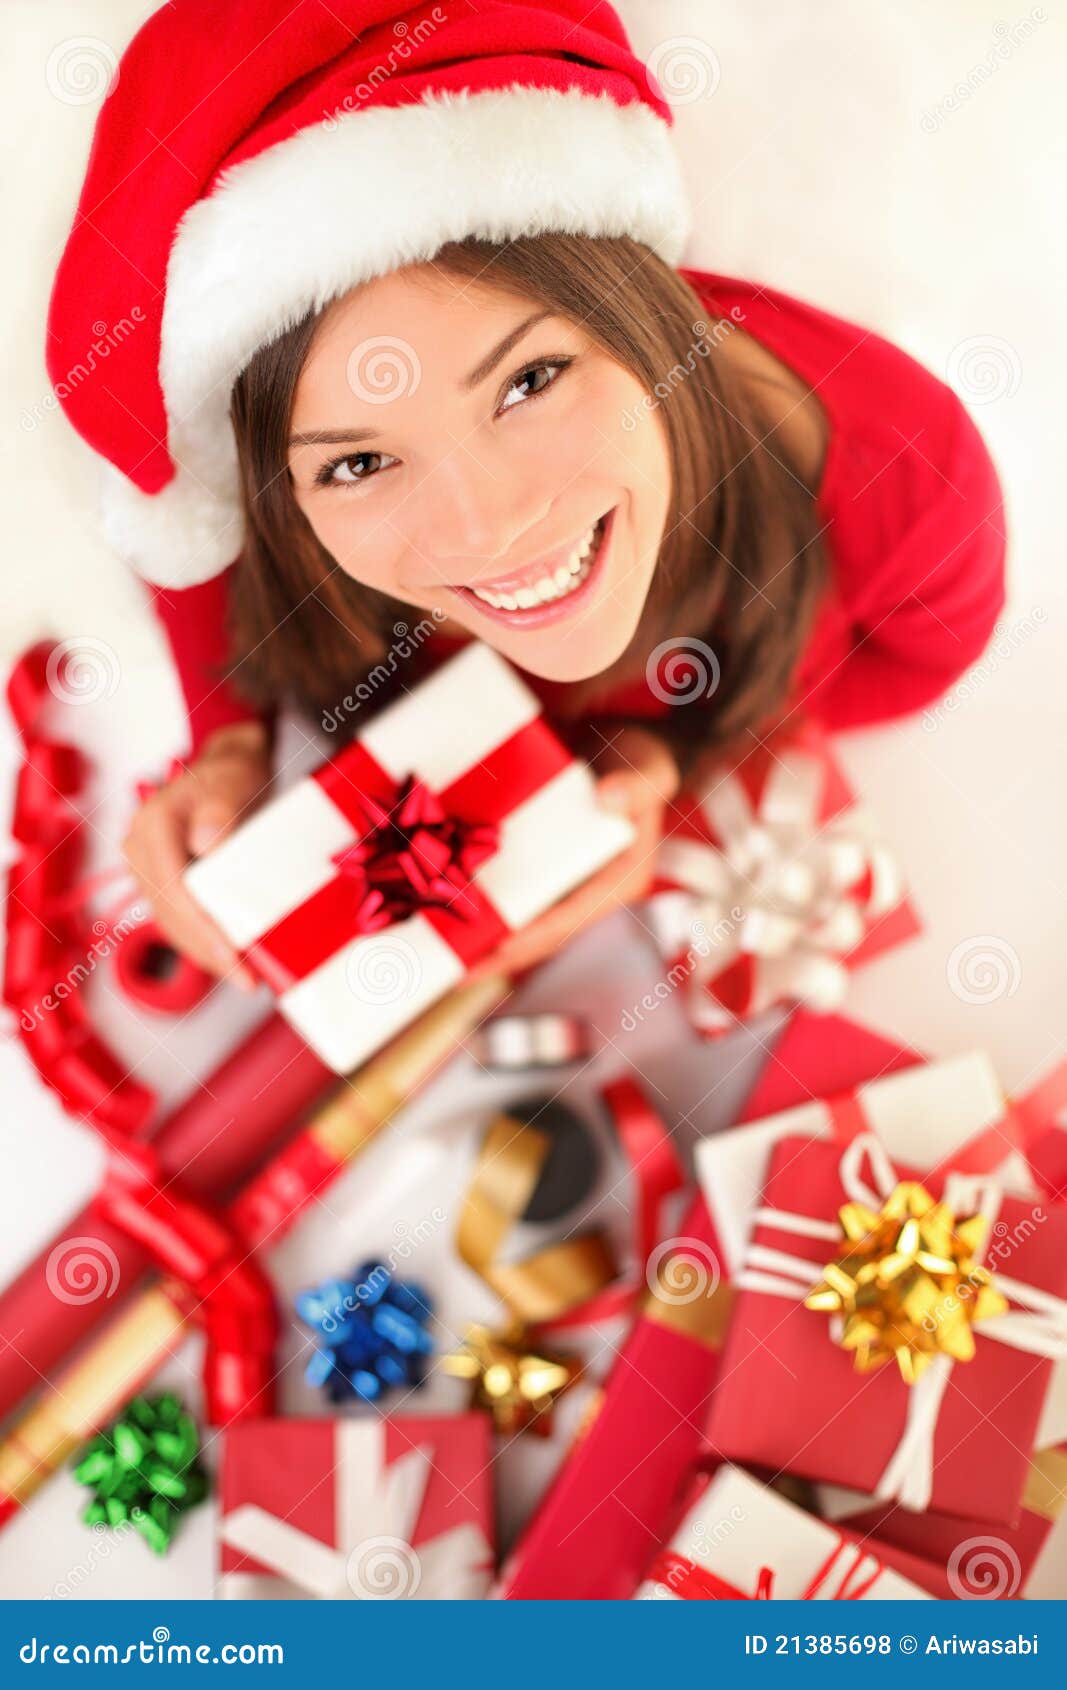 Procura Se Mulheres Solteiras Em Todo O Natal-4051